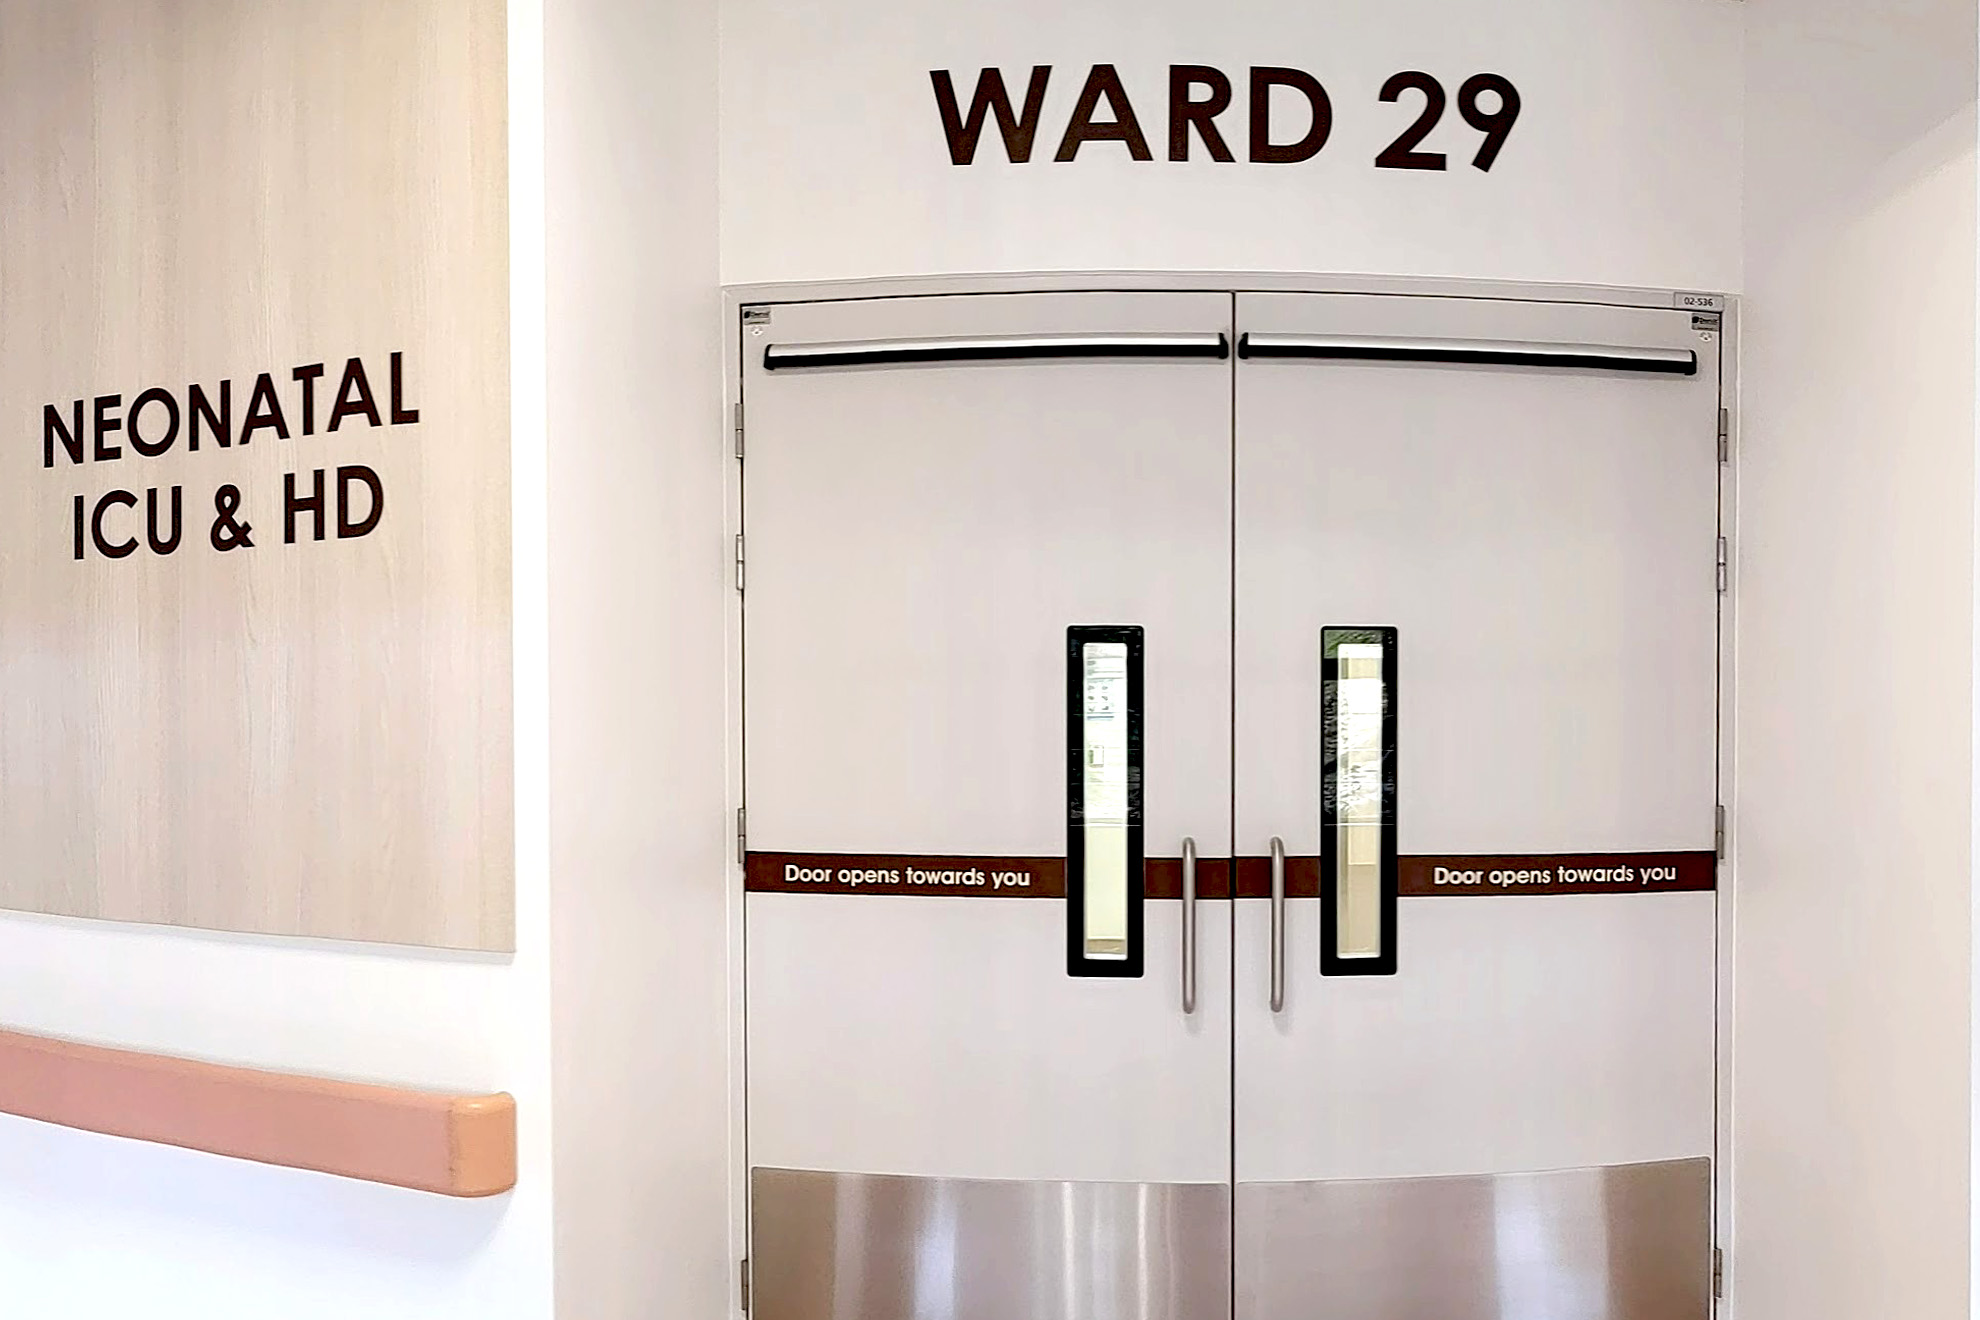 Ward 29